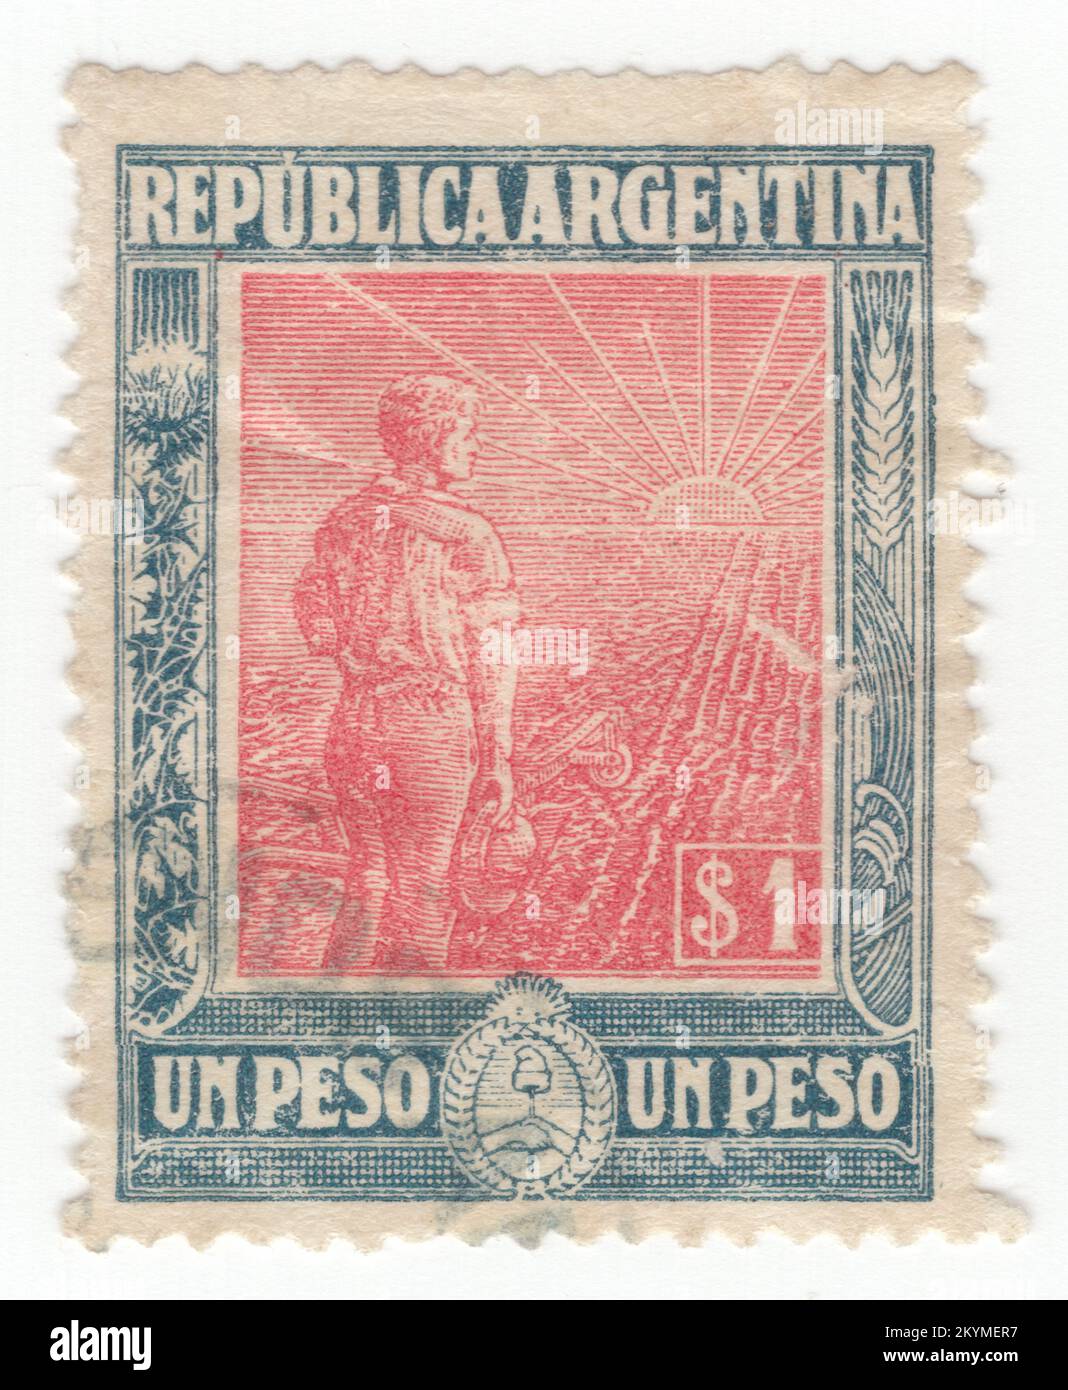 ARGENTINIEN - 1912: 1 Pesos dunkelblaue und rosa Briefmarke mit einer allegorischen Zusammensetzung - ein junger Landwirt mit einem Pflug am Rand eines teilweise gepflügten Feldes schaut auf den Sonnenaufgang. Ein Symbol der Agrarreform und der Bildung Argentiniens als Weltmacht in der Agrarproduktion Stockfoto